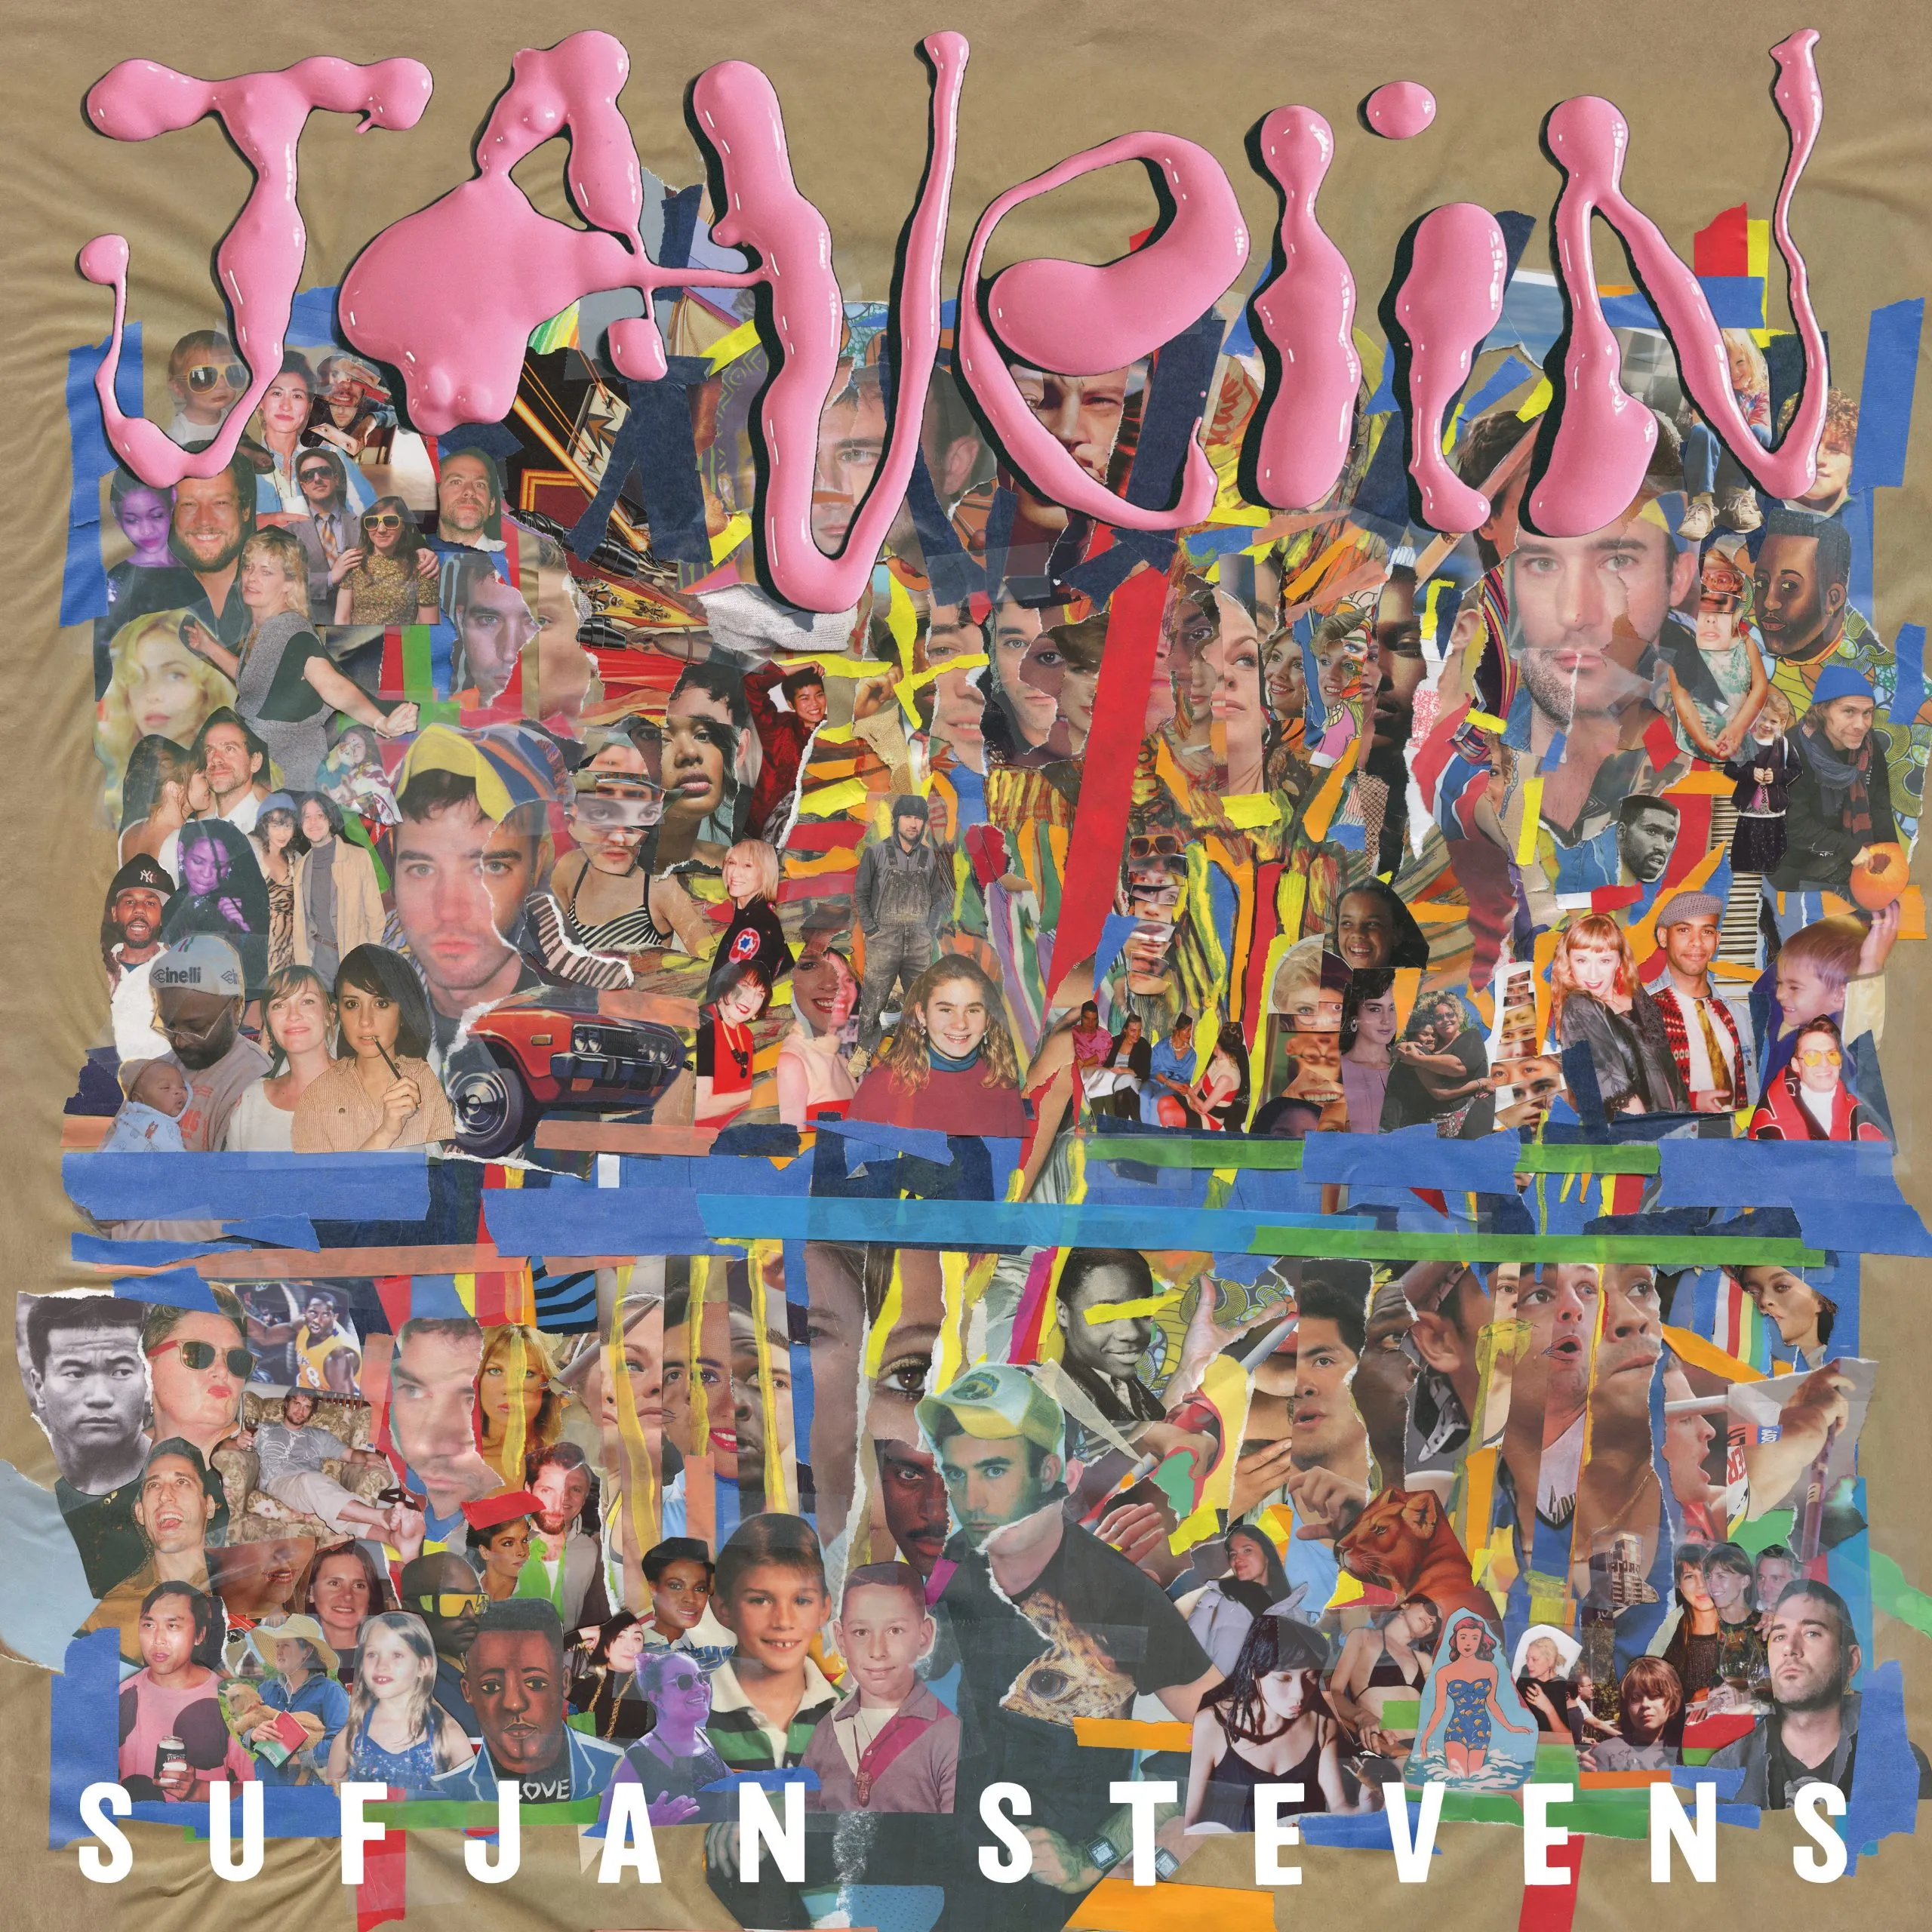 Sufjan Stevens’ “Javelin” pierces the heart and soul